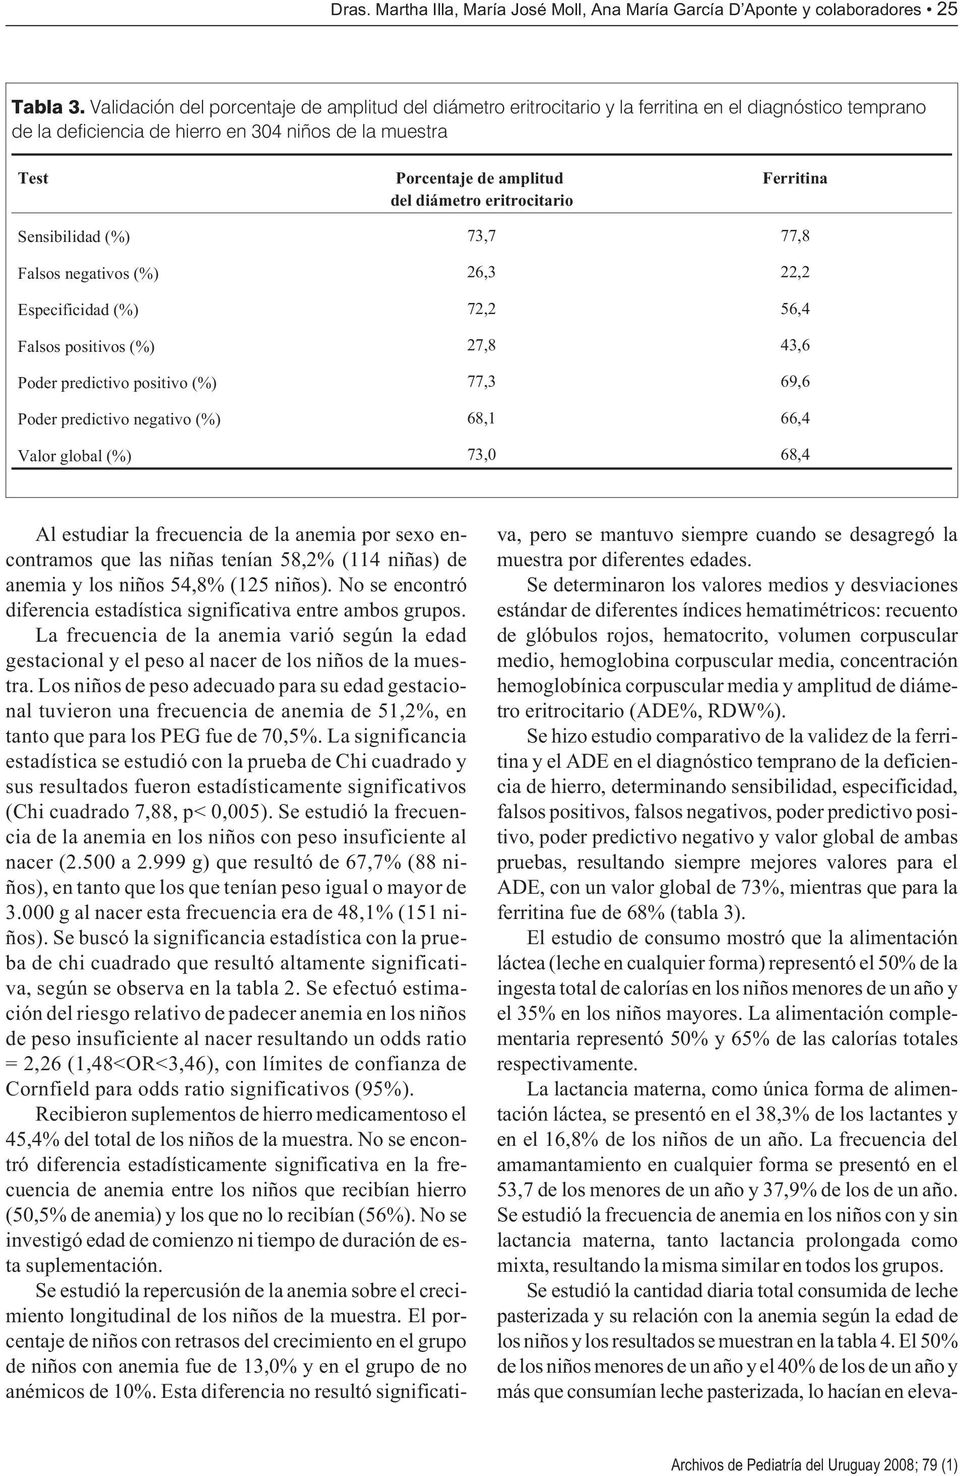 diámetro eritrocitario Ferritina Sensibilidad (%) 73,7 77,8 Falsos negativos (%) 26,3 22,2 Especificidad (%) 72,2 56,4 Falsos positivos (%) 27,8 43,6 Poder predictivo positivo (%) 77,3 69,6 Poder